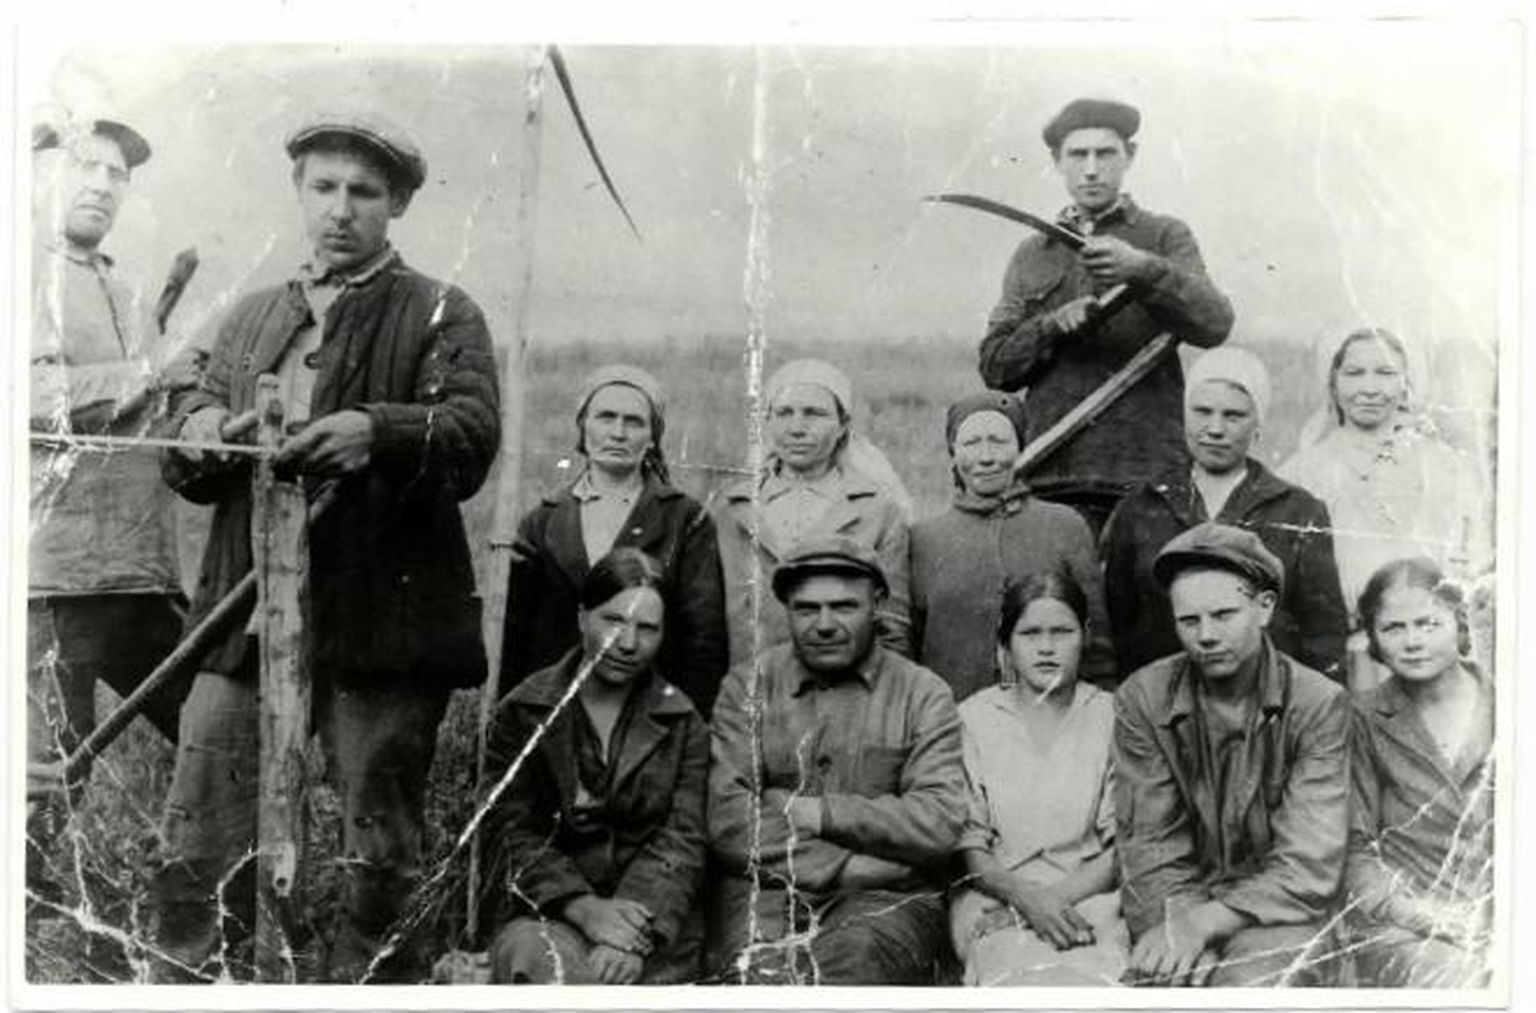 Estono-Semenovka küla kolhoosi Uus Tee liikmed. Viiest fotol olevast mehest neli lasti maha 1938. aastal kui «Eesti spioonid». Need olid kolm seisvat meest (vasakult) Hindrek Hark, kolhoosi esimene esimees Julius Hüsson ja Eduard Post. Esireas istub vasakult teine Juhan Soots, kes samuti lasti maha. Eduard Kõps (paremalt teine esireas) suri enne suurt terrorit. Teises reas seisvatest naistest vahistas NKVD Olga Laeva (keskmine), aga tema pääses peale kümmet kuud ülekuulamisi tagasi koju. Foto tehtud ajavahemikus 1935-1937. 